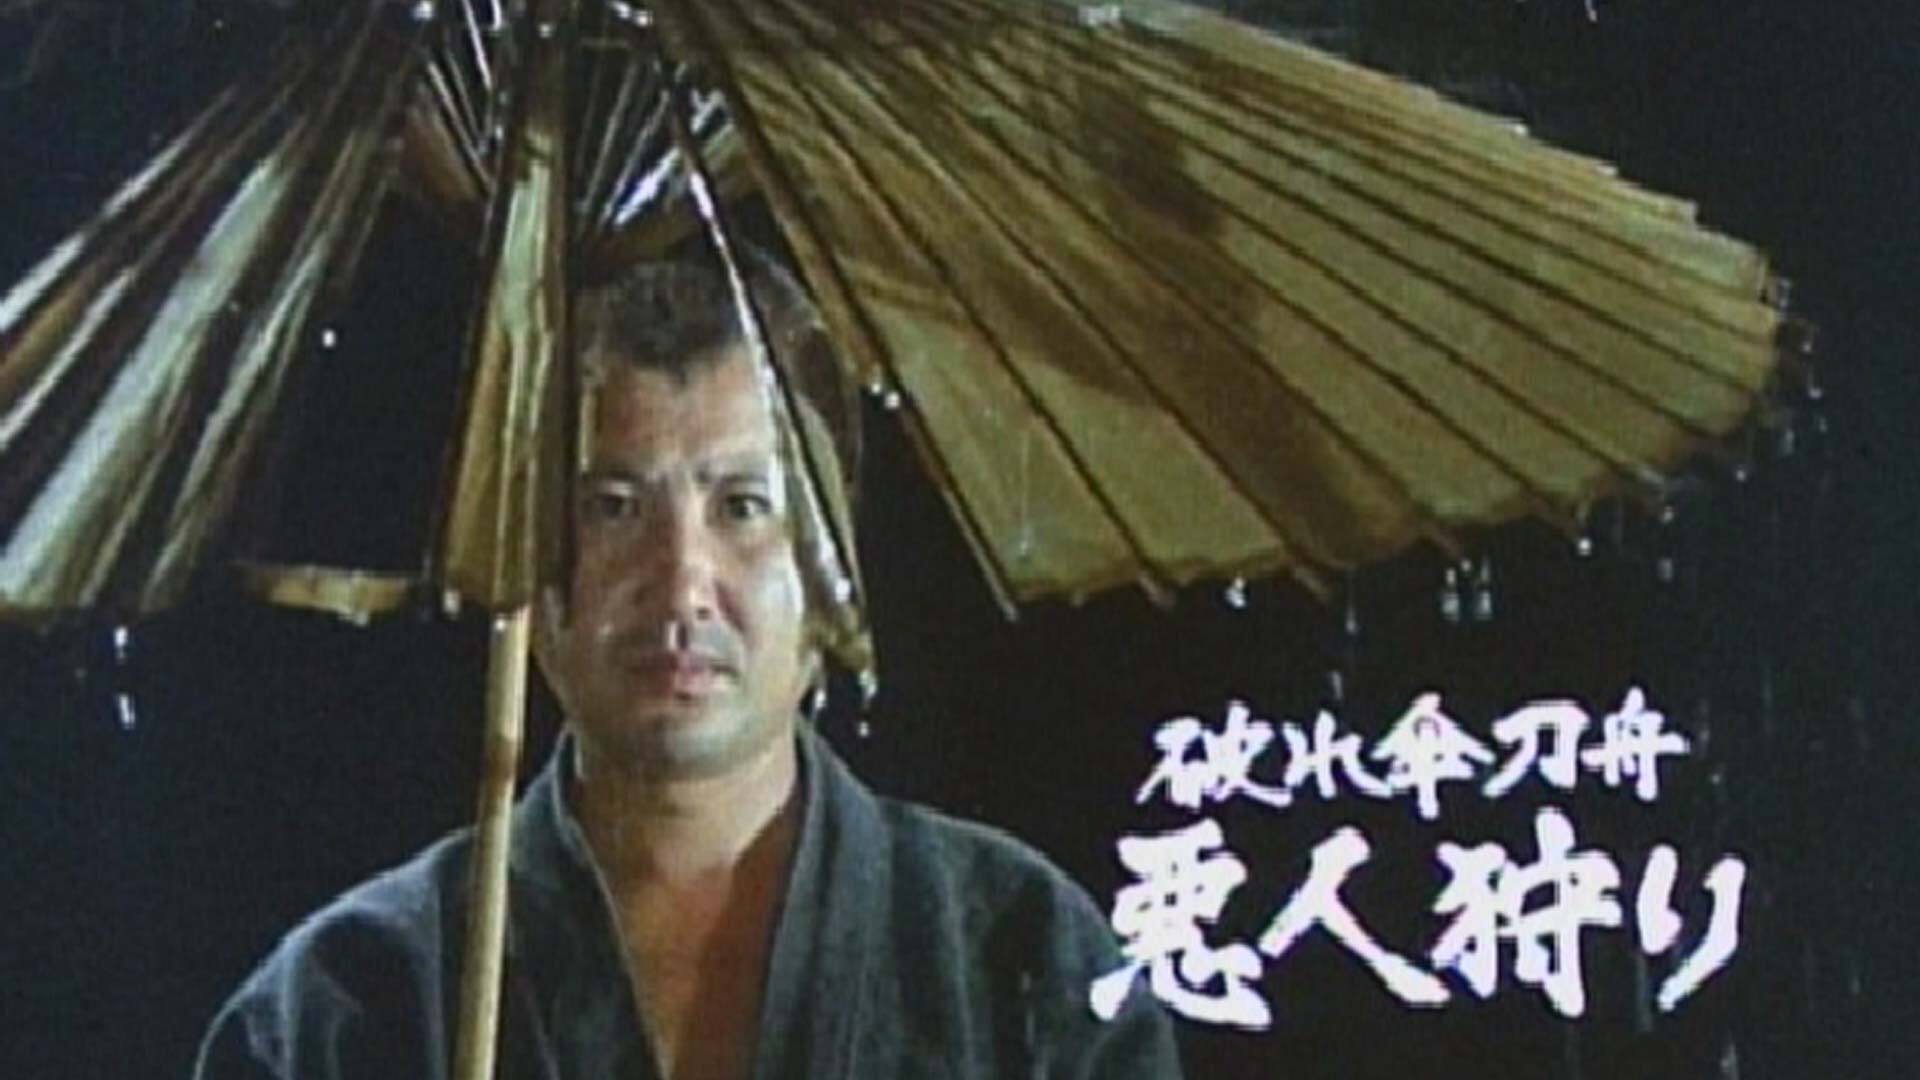 日本時代劇「破れ傘刀舟悪人狩り」